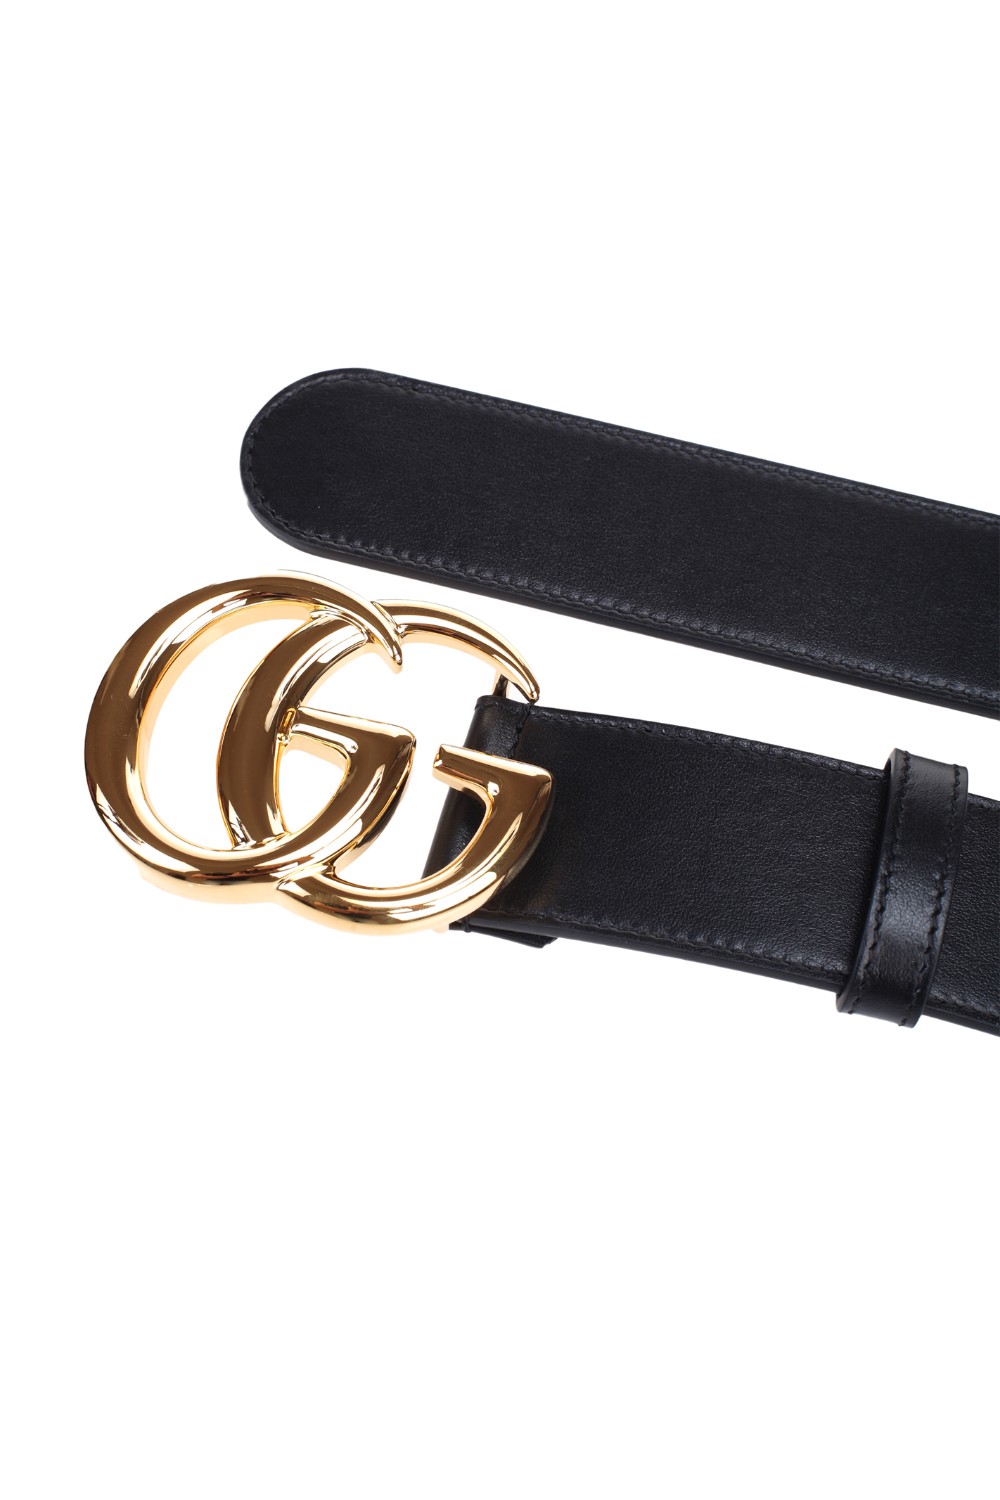 shop GUCCI Sales Cintura: Gucci cintura in pelle nera con la nuova Fibbia Doppia G.
Finiture color oro.
Fibbia Doppia G.
Fibbia: L 3,03" x A 2,36".
Altezza 4cm.
Fabbricato in Italia.. 400593 0YA0O-1000 number 6647921